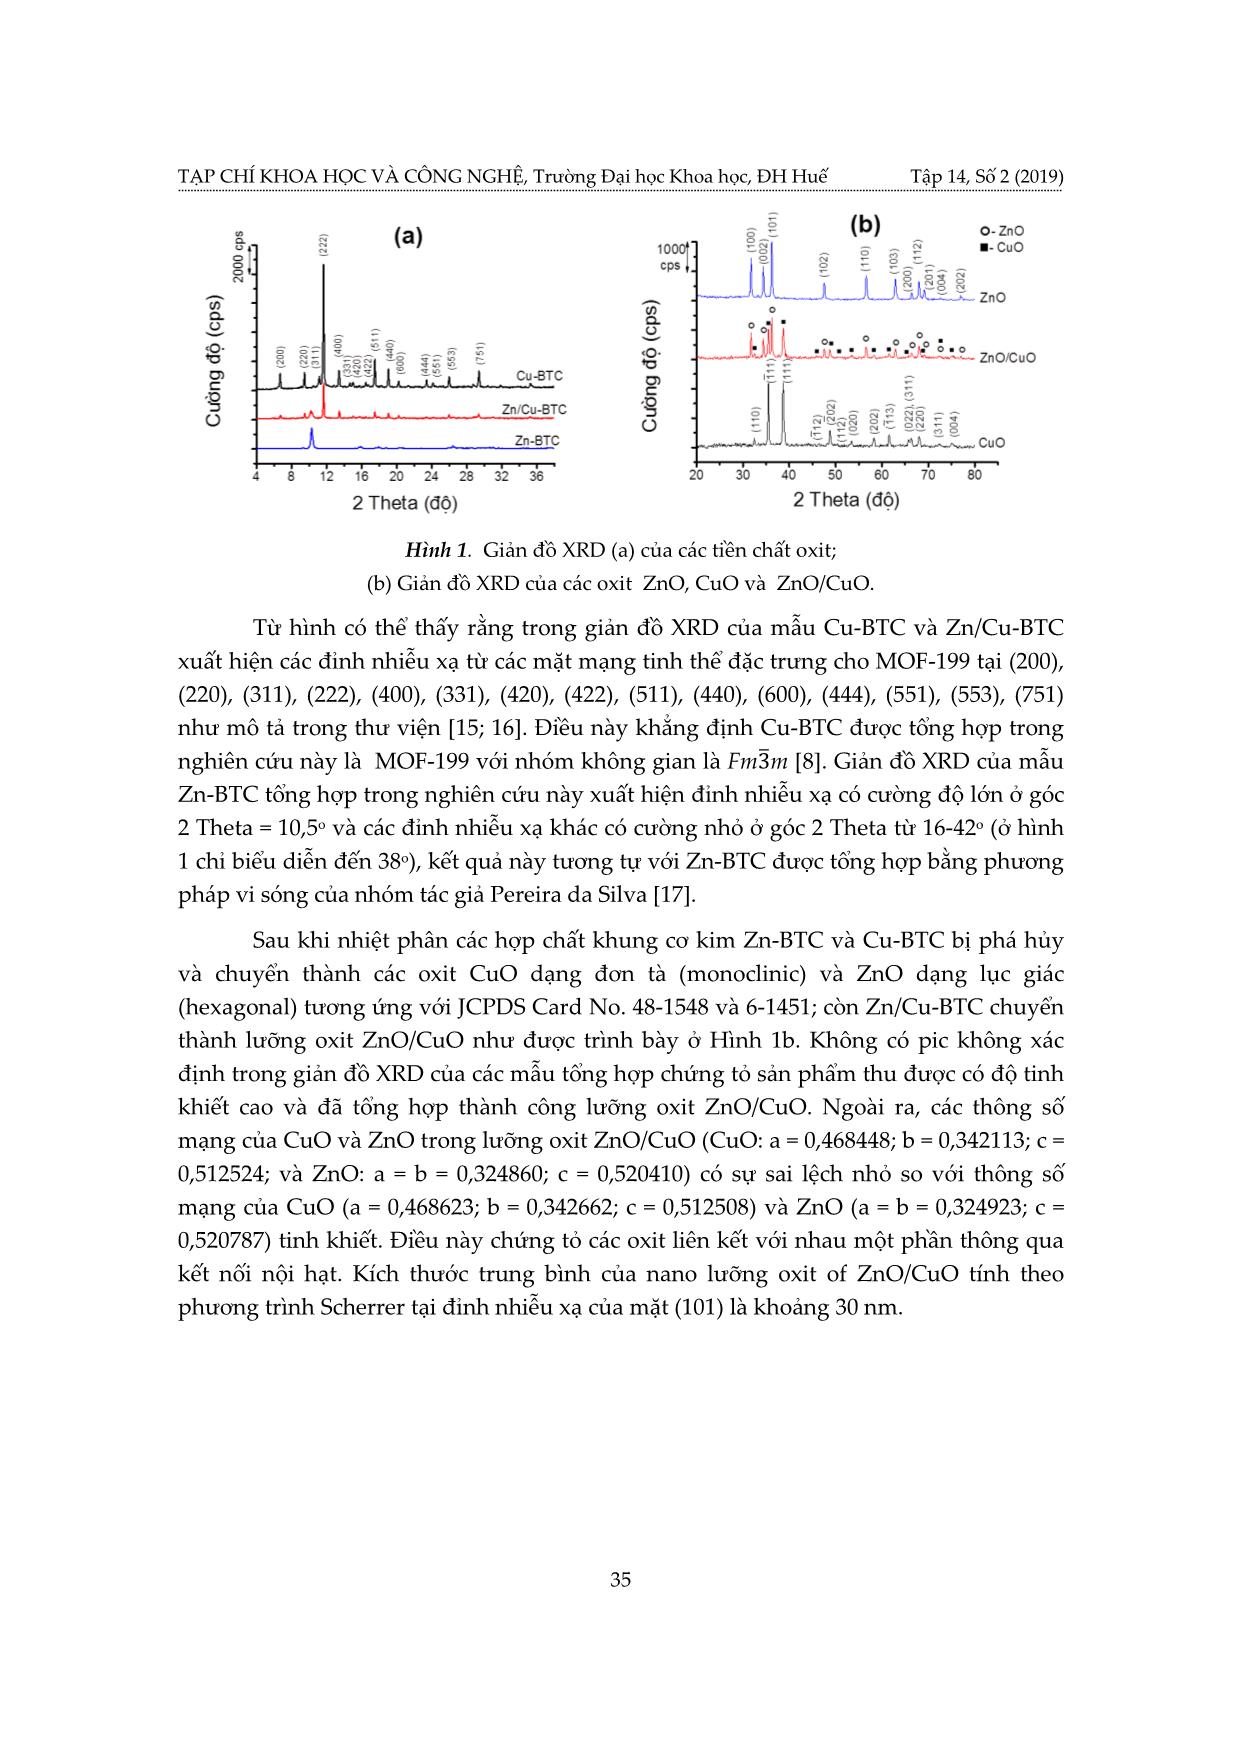 Tổng hợp lưỡng oxit Zno/CuO và ứng dụng làm xúc tác quang hóa trang 5